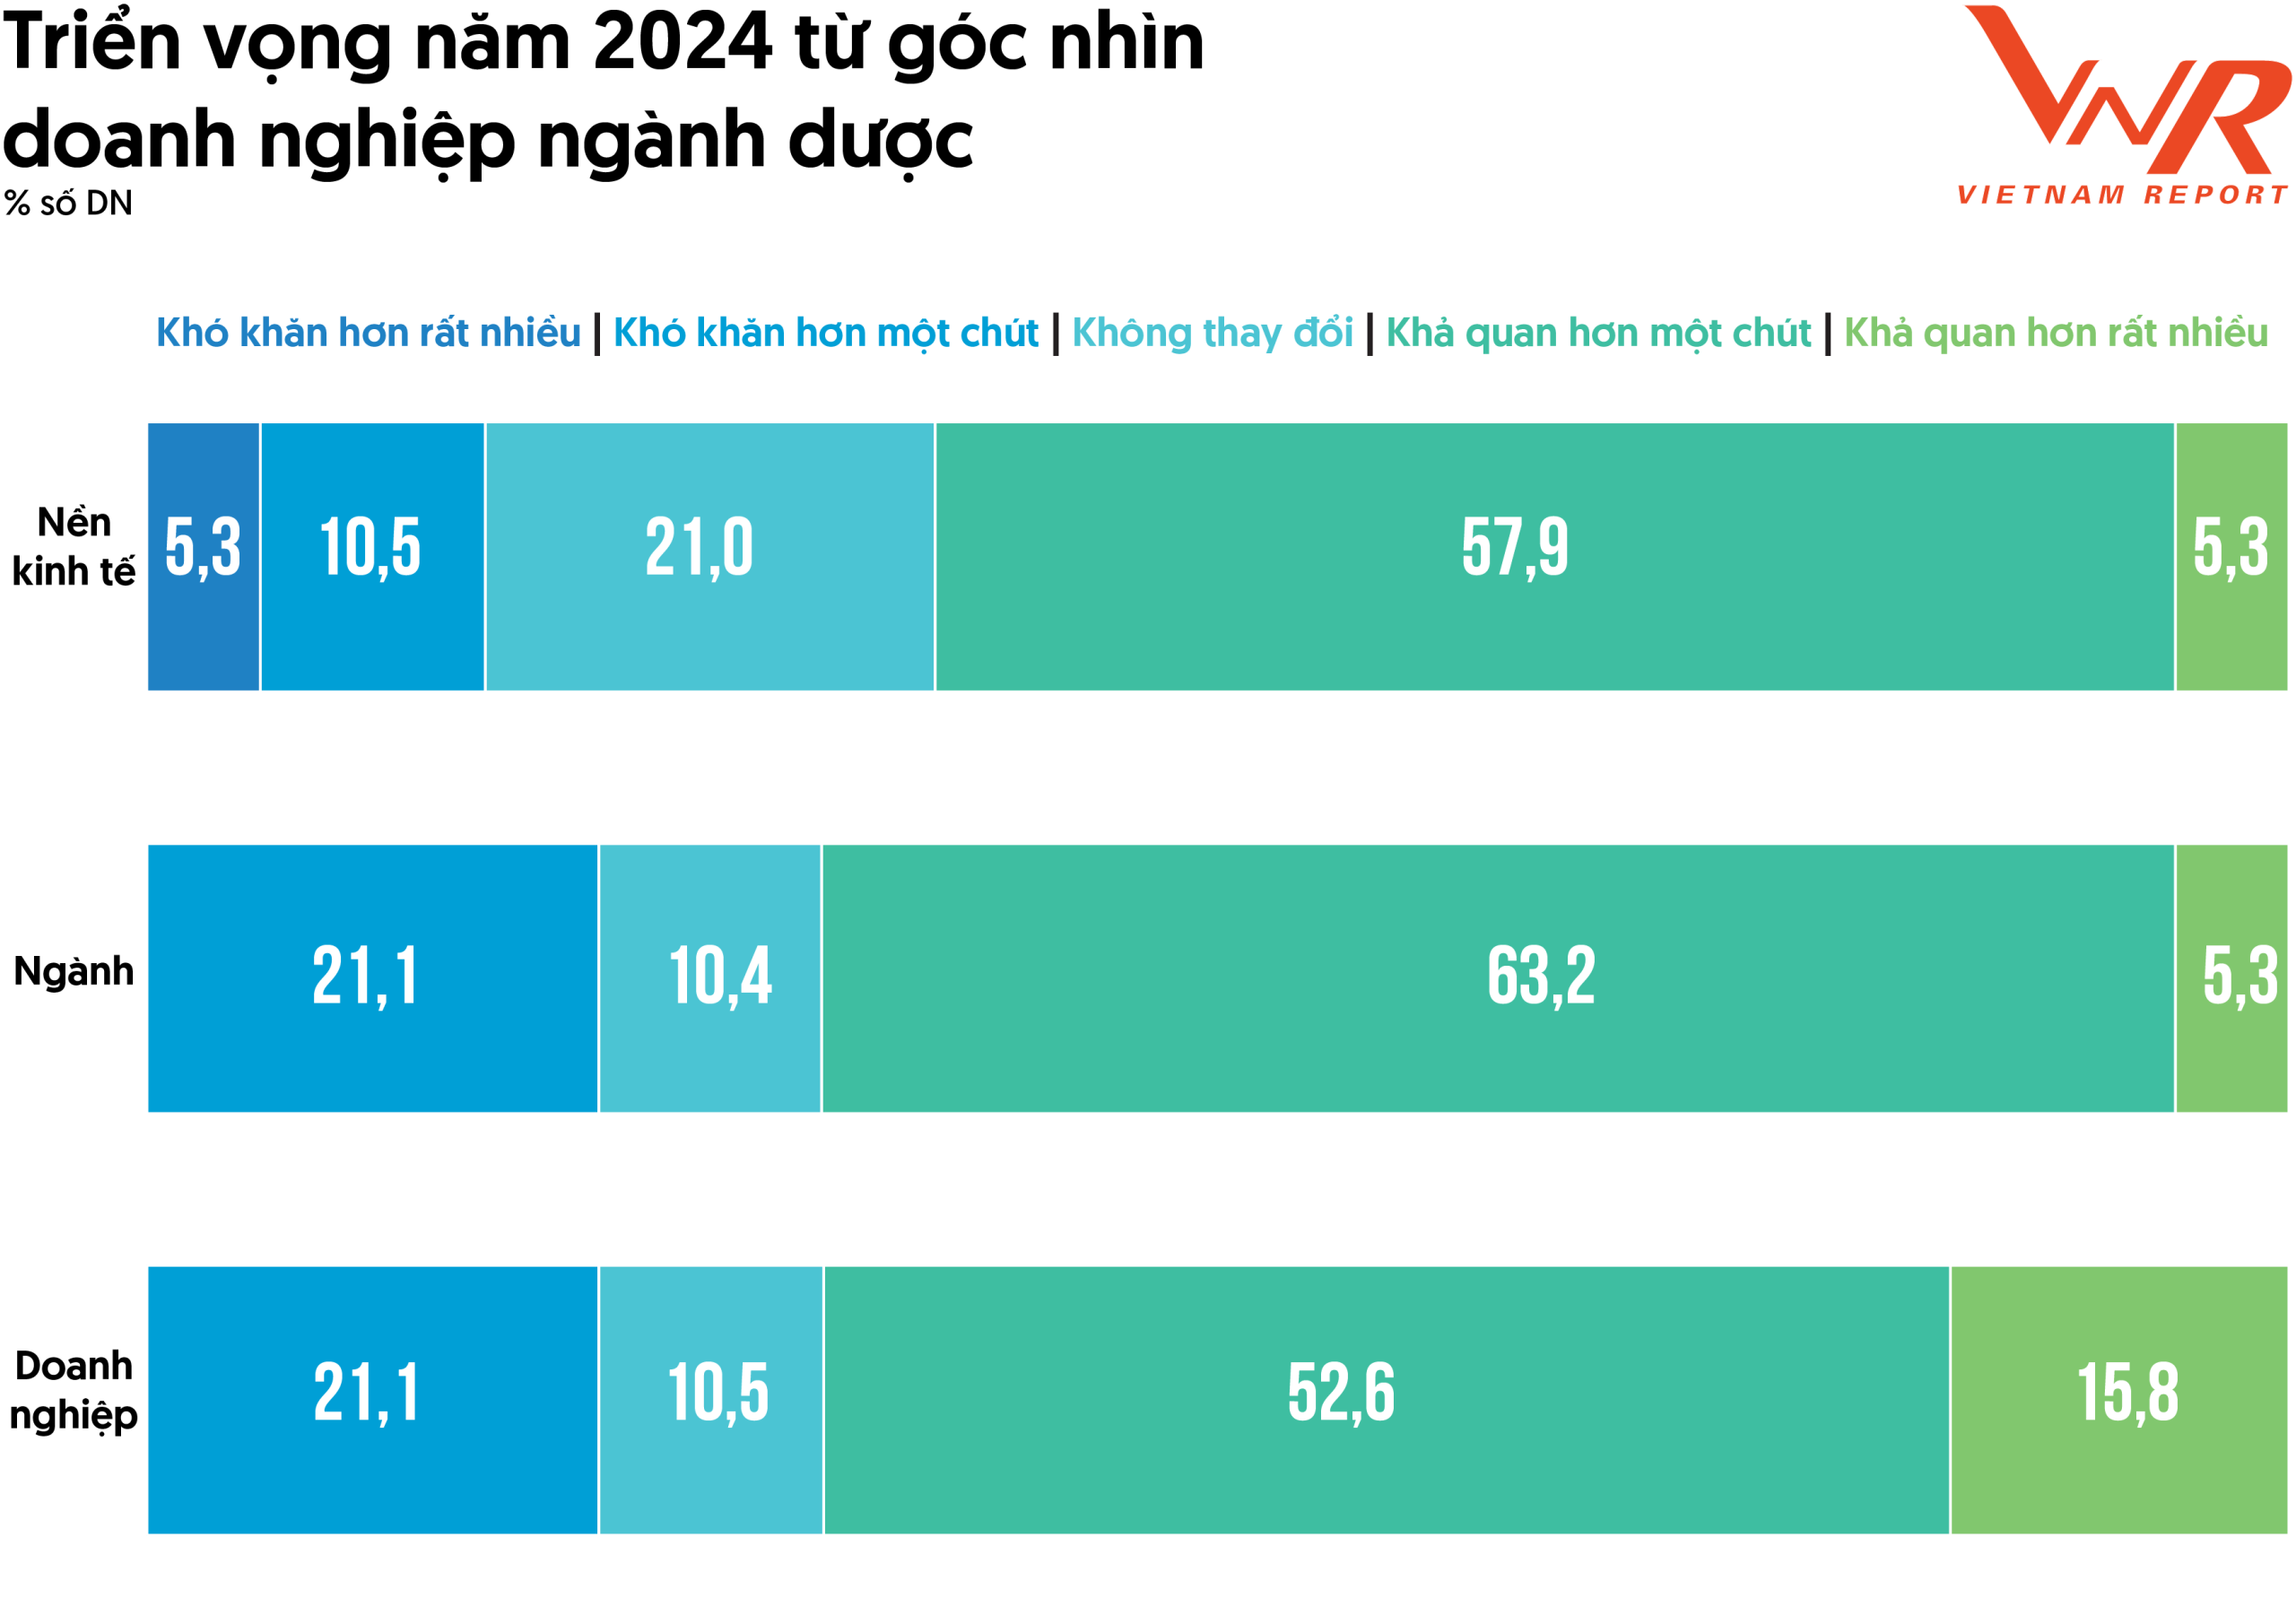 Dự báo triển vọng ngành dược phẩm Việt Nam trong năm 2024 và những năm tiếp theo